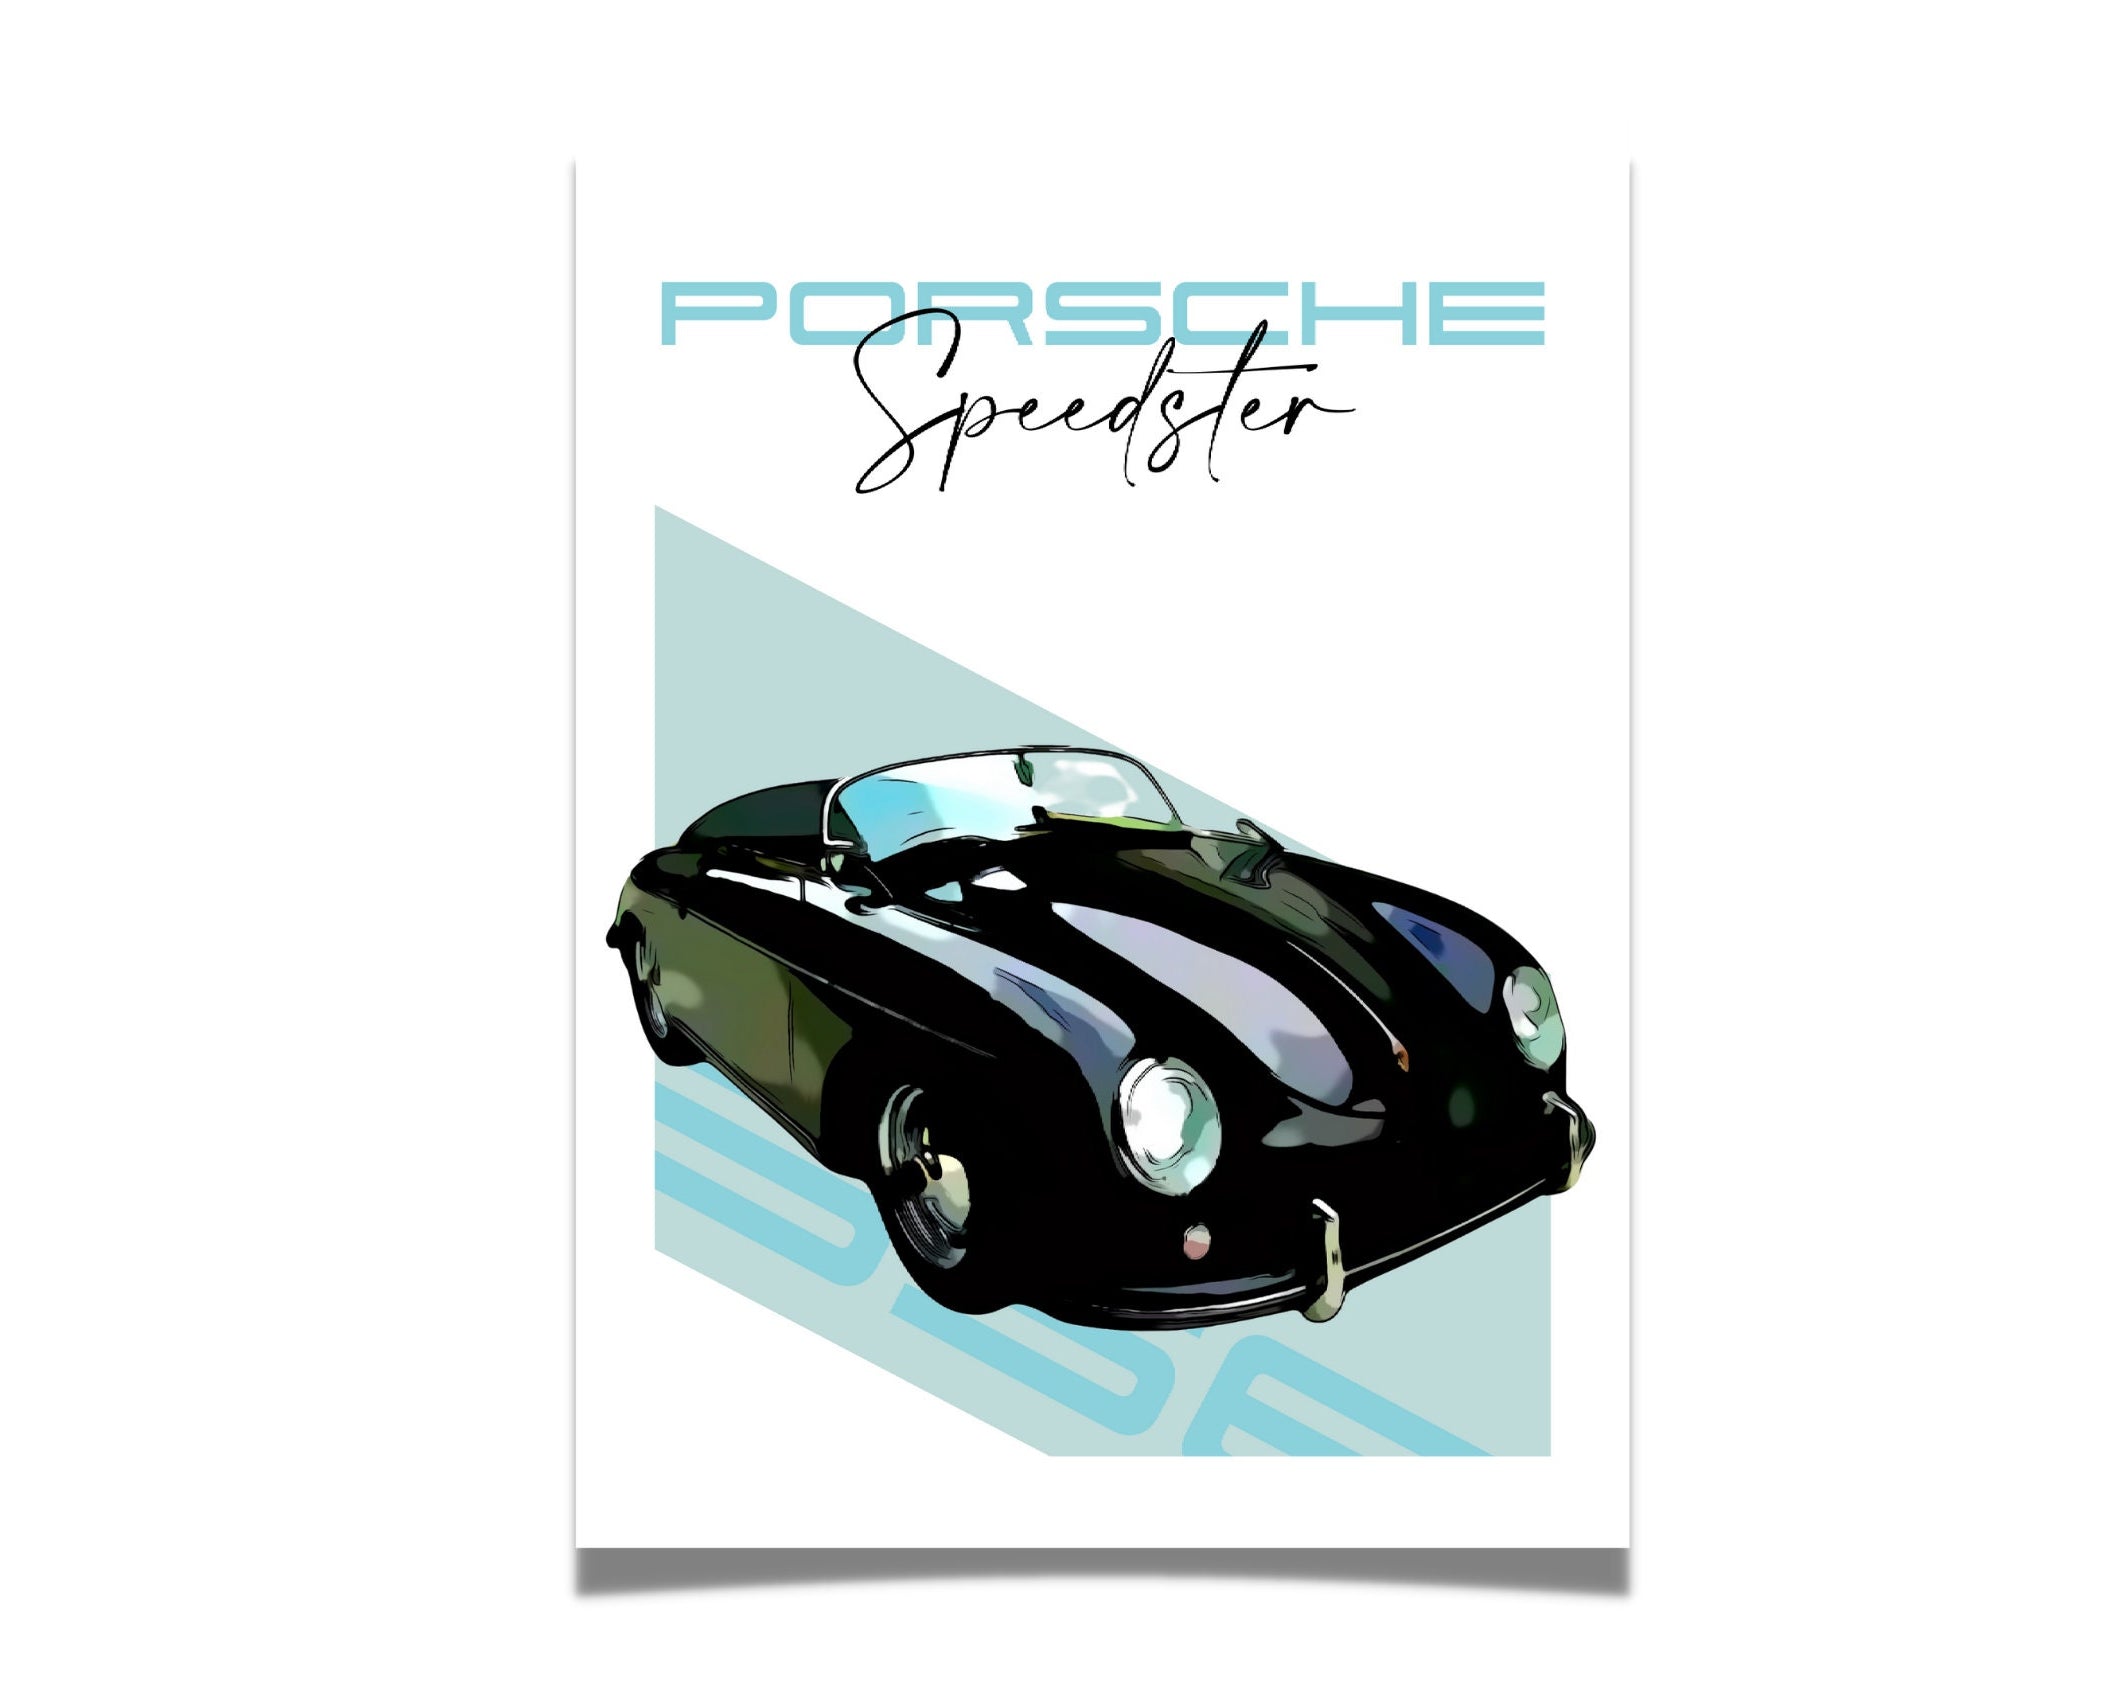 Porsche Speedster 356 | Art Print | Digital Print | Auto Poster